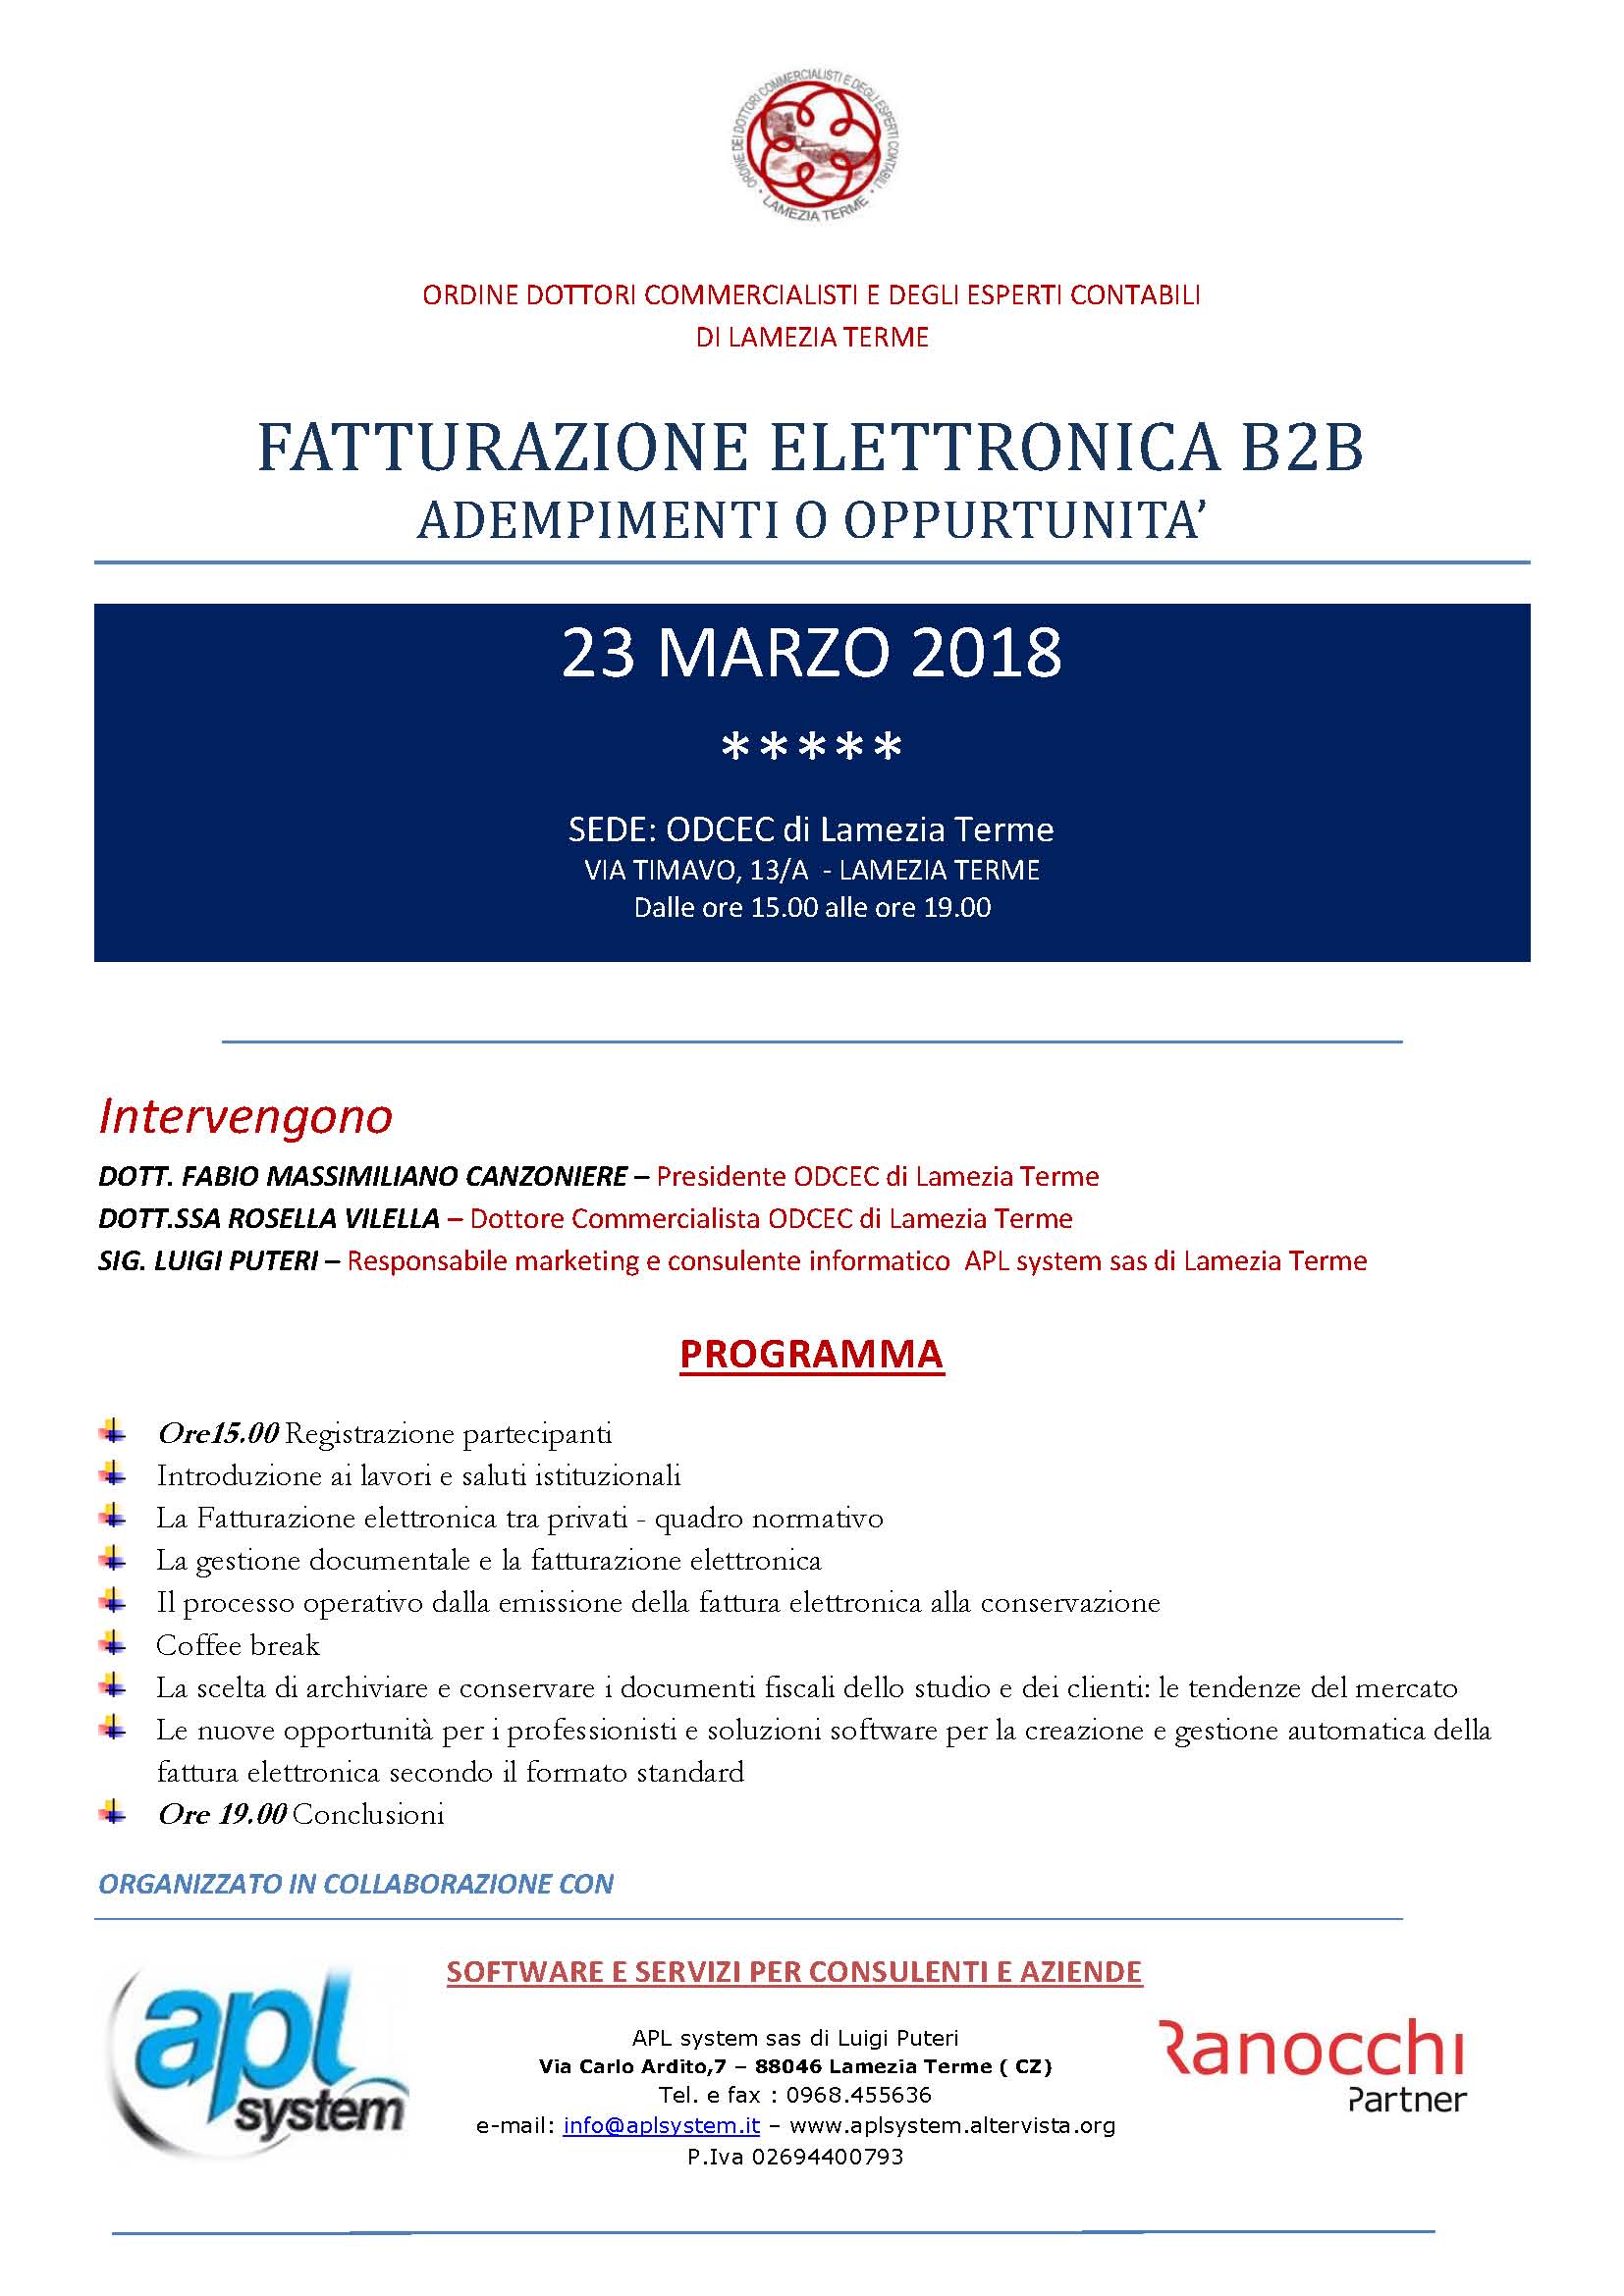 fatturazione elettronica b2b convegno lamezia terme 23 marzo 2018